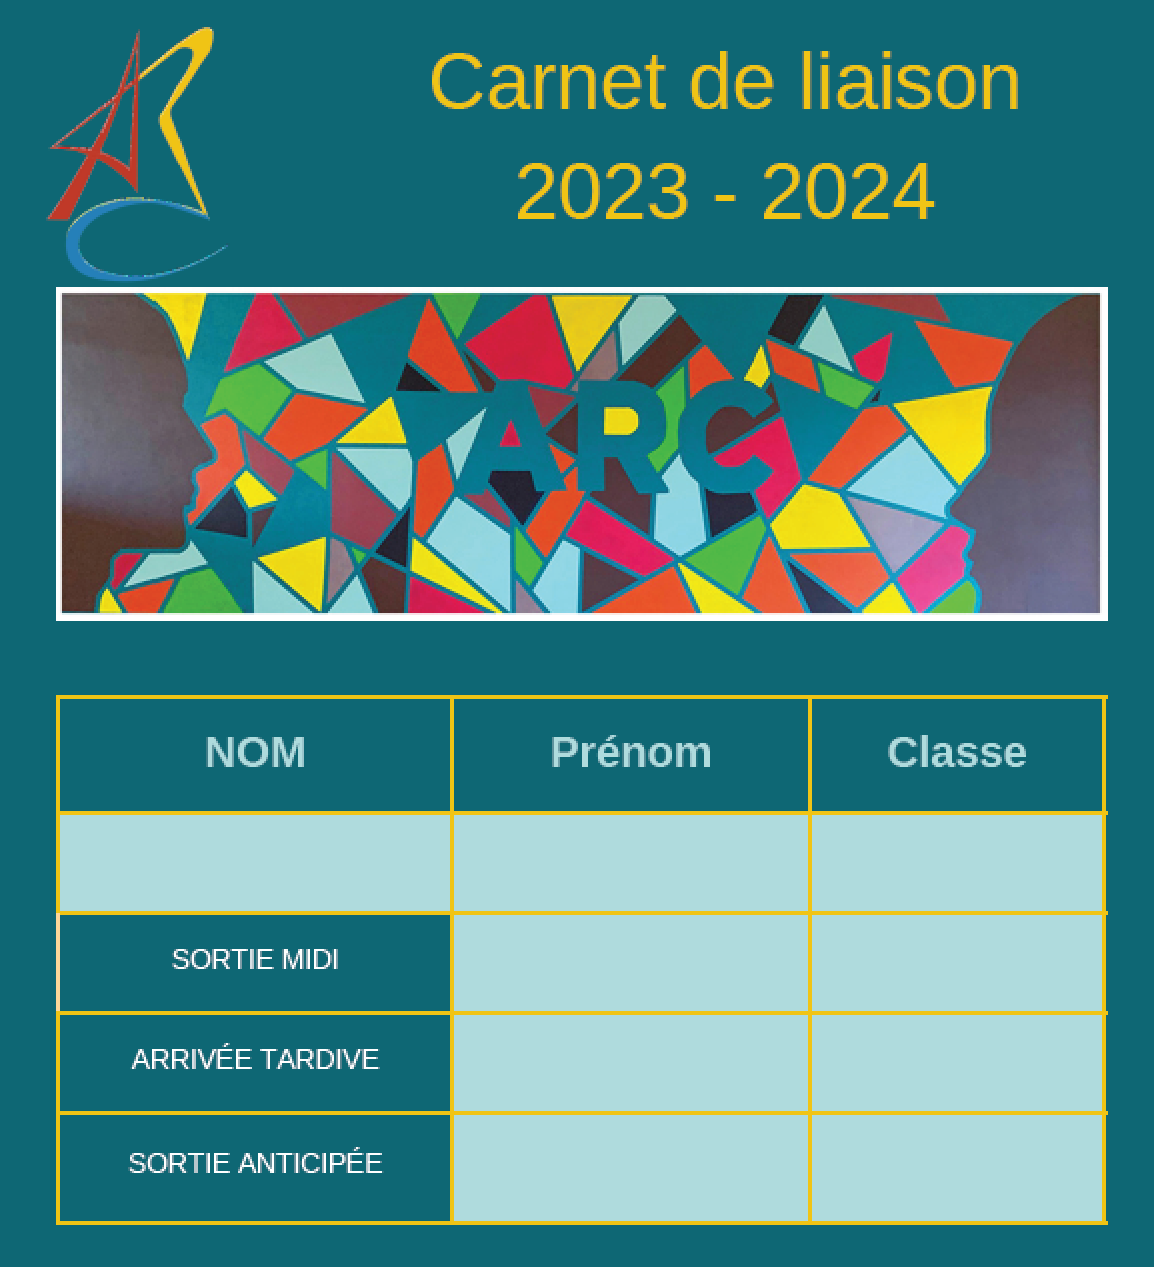 Carnet de liaison 2023-2024